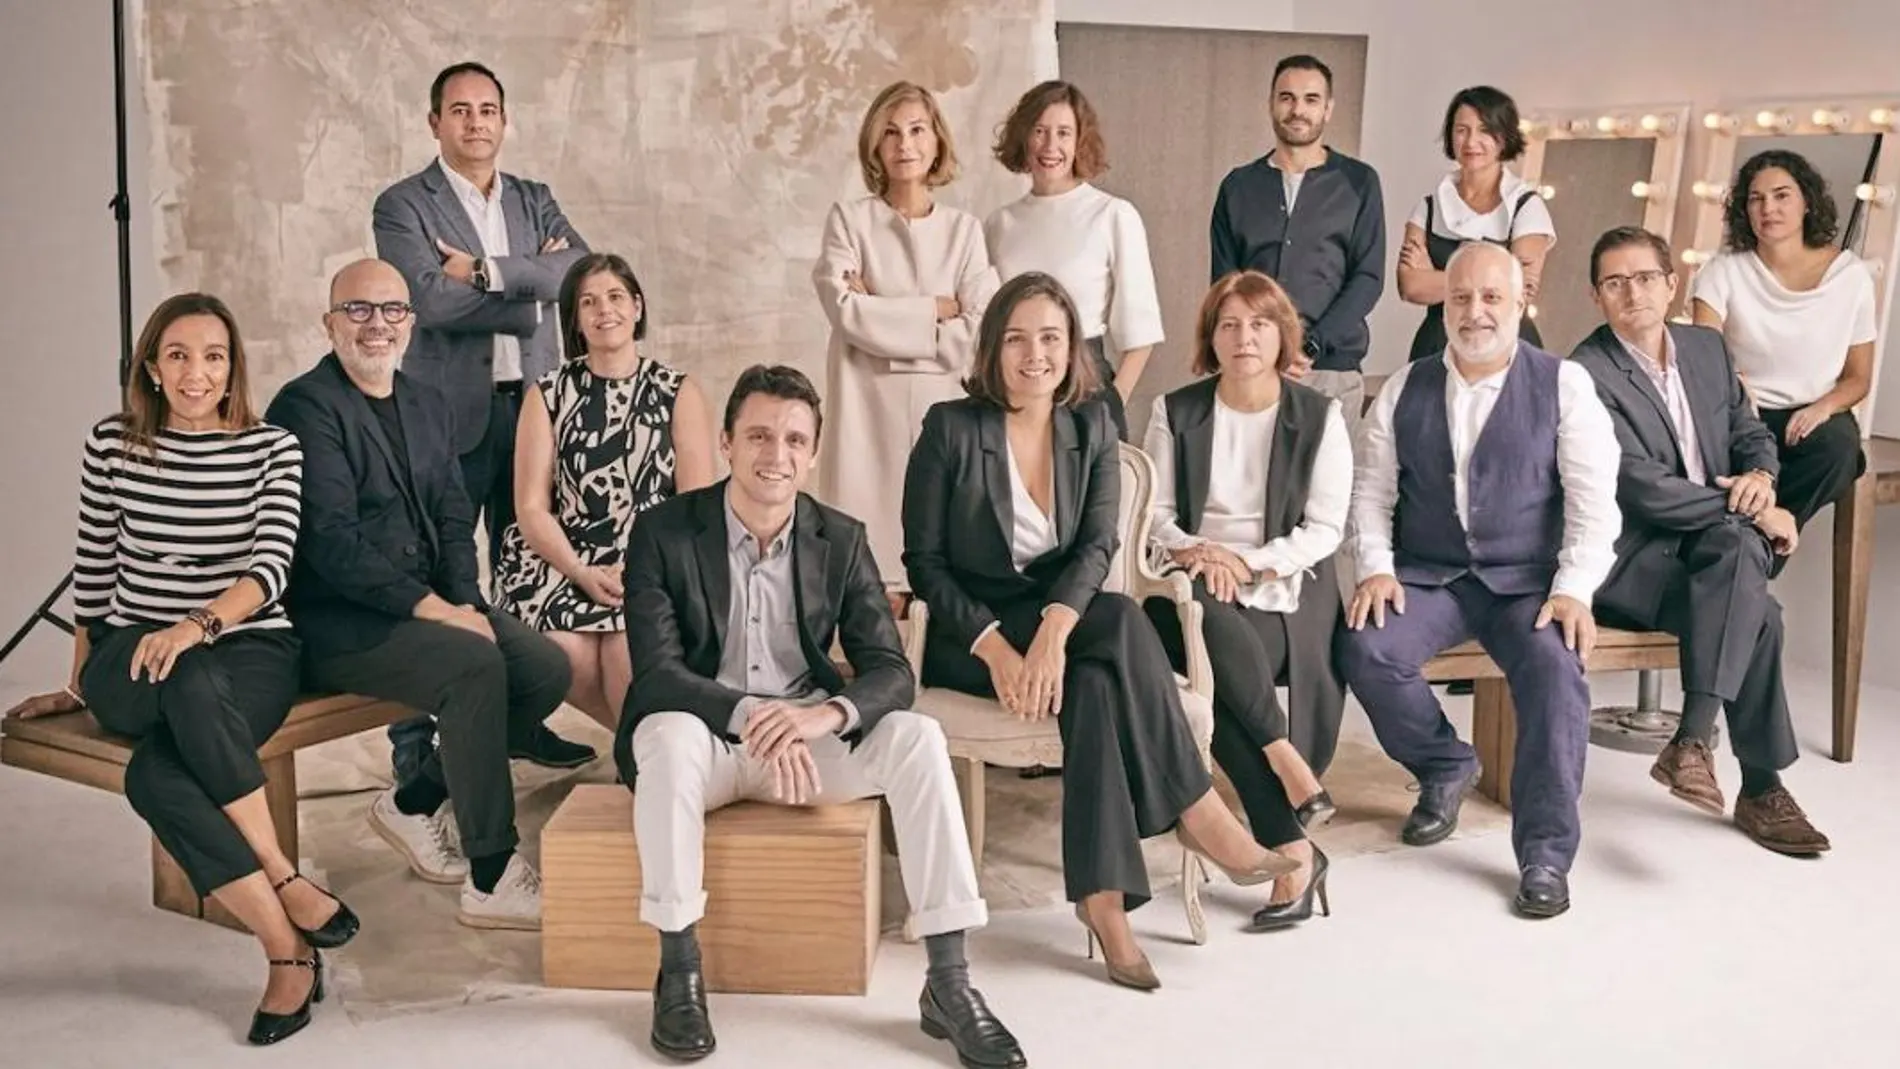 El nuevo Comité de Dirección del grupo, encabezado por Adriana Domínguez, en centro de la imagen